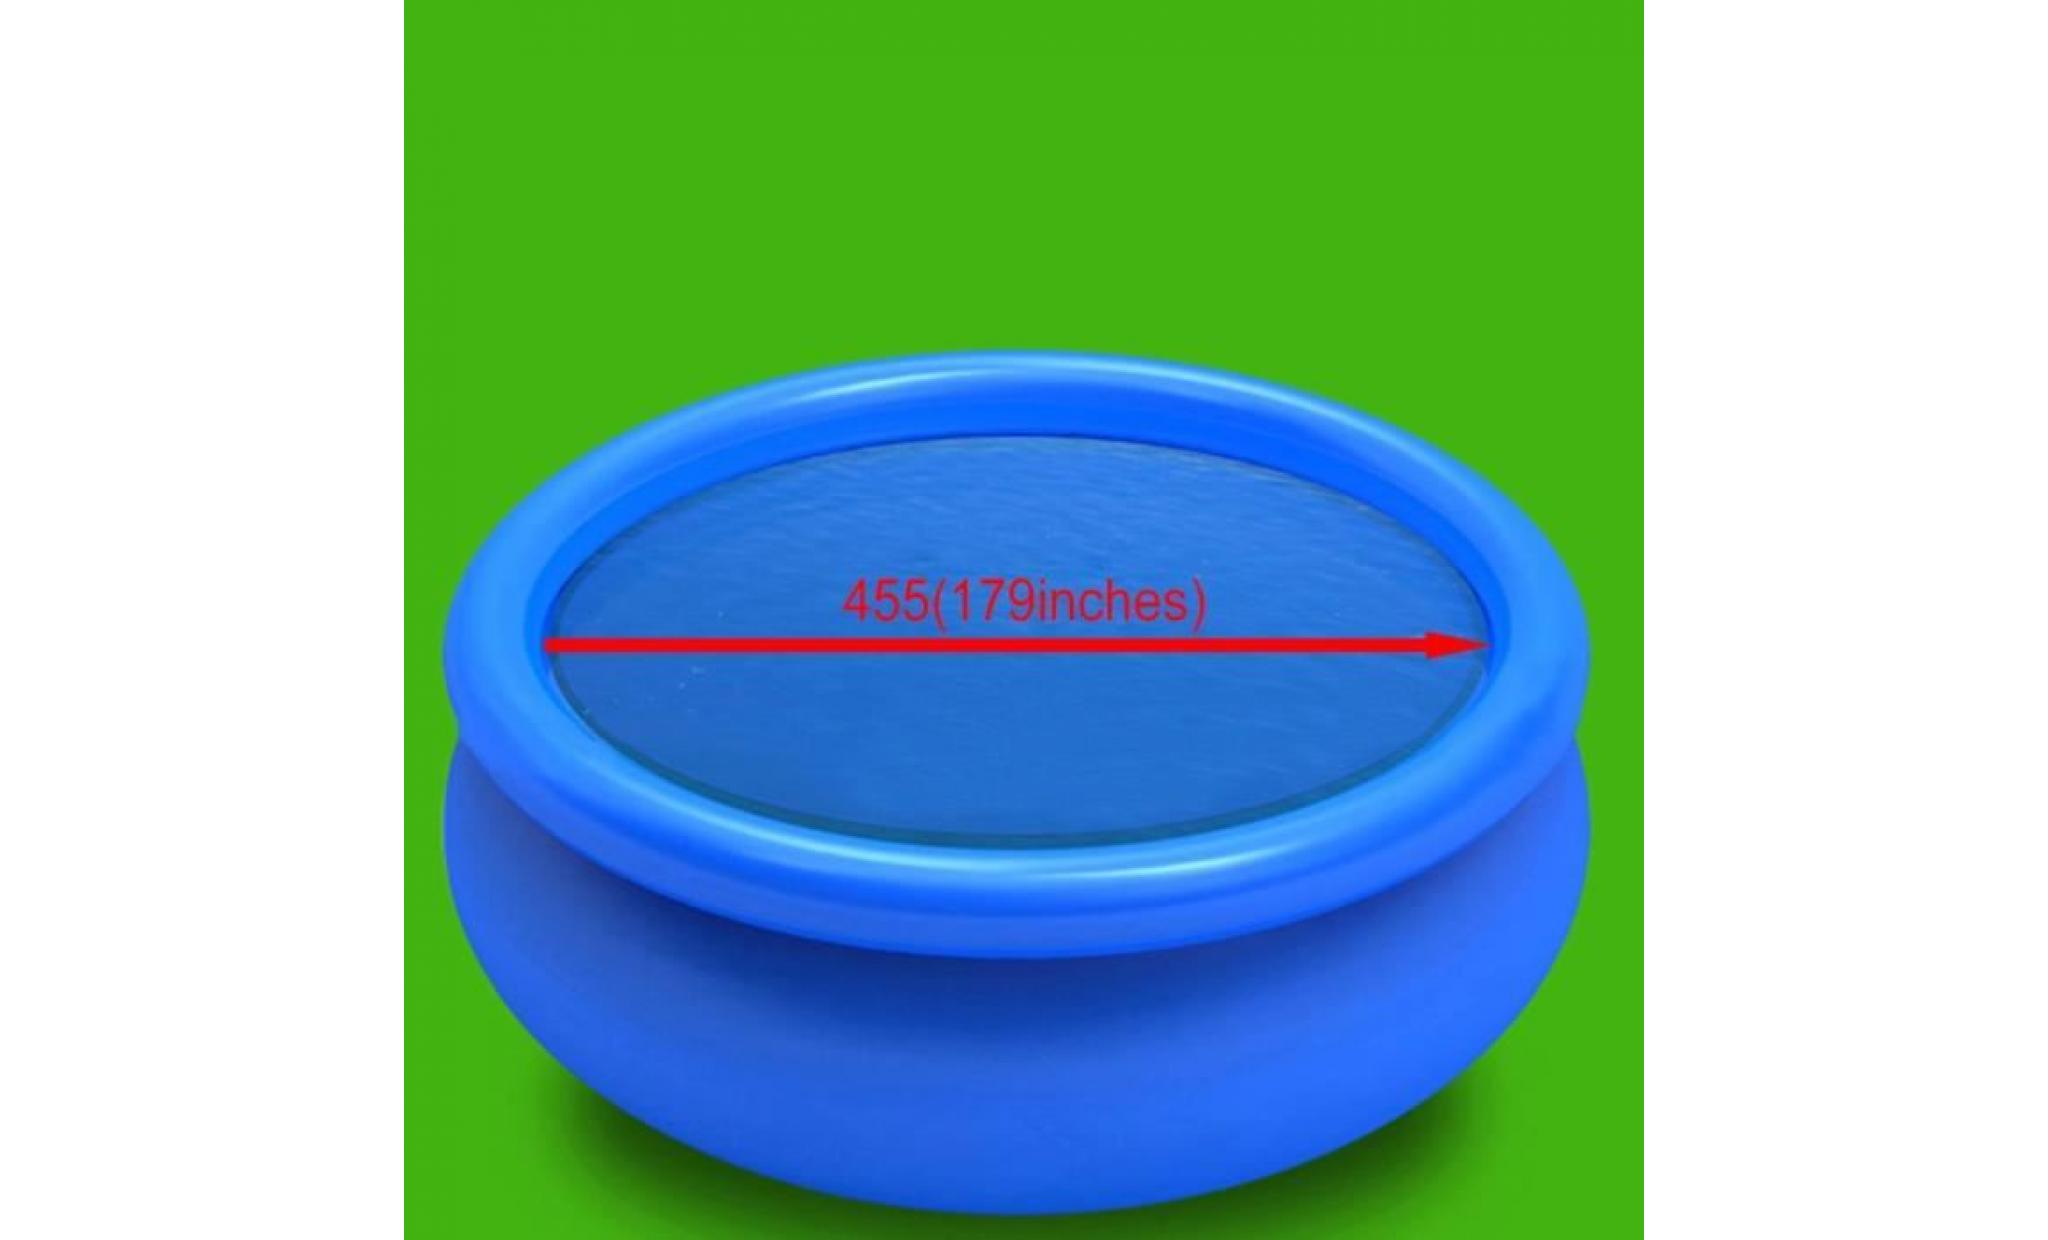 haute qualité magnifique economique  film solaire de piscine ronde pe 455 cm bleu pas cher